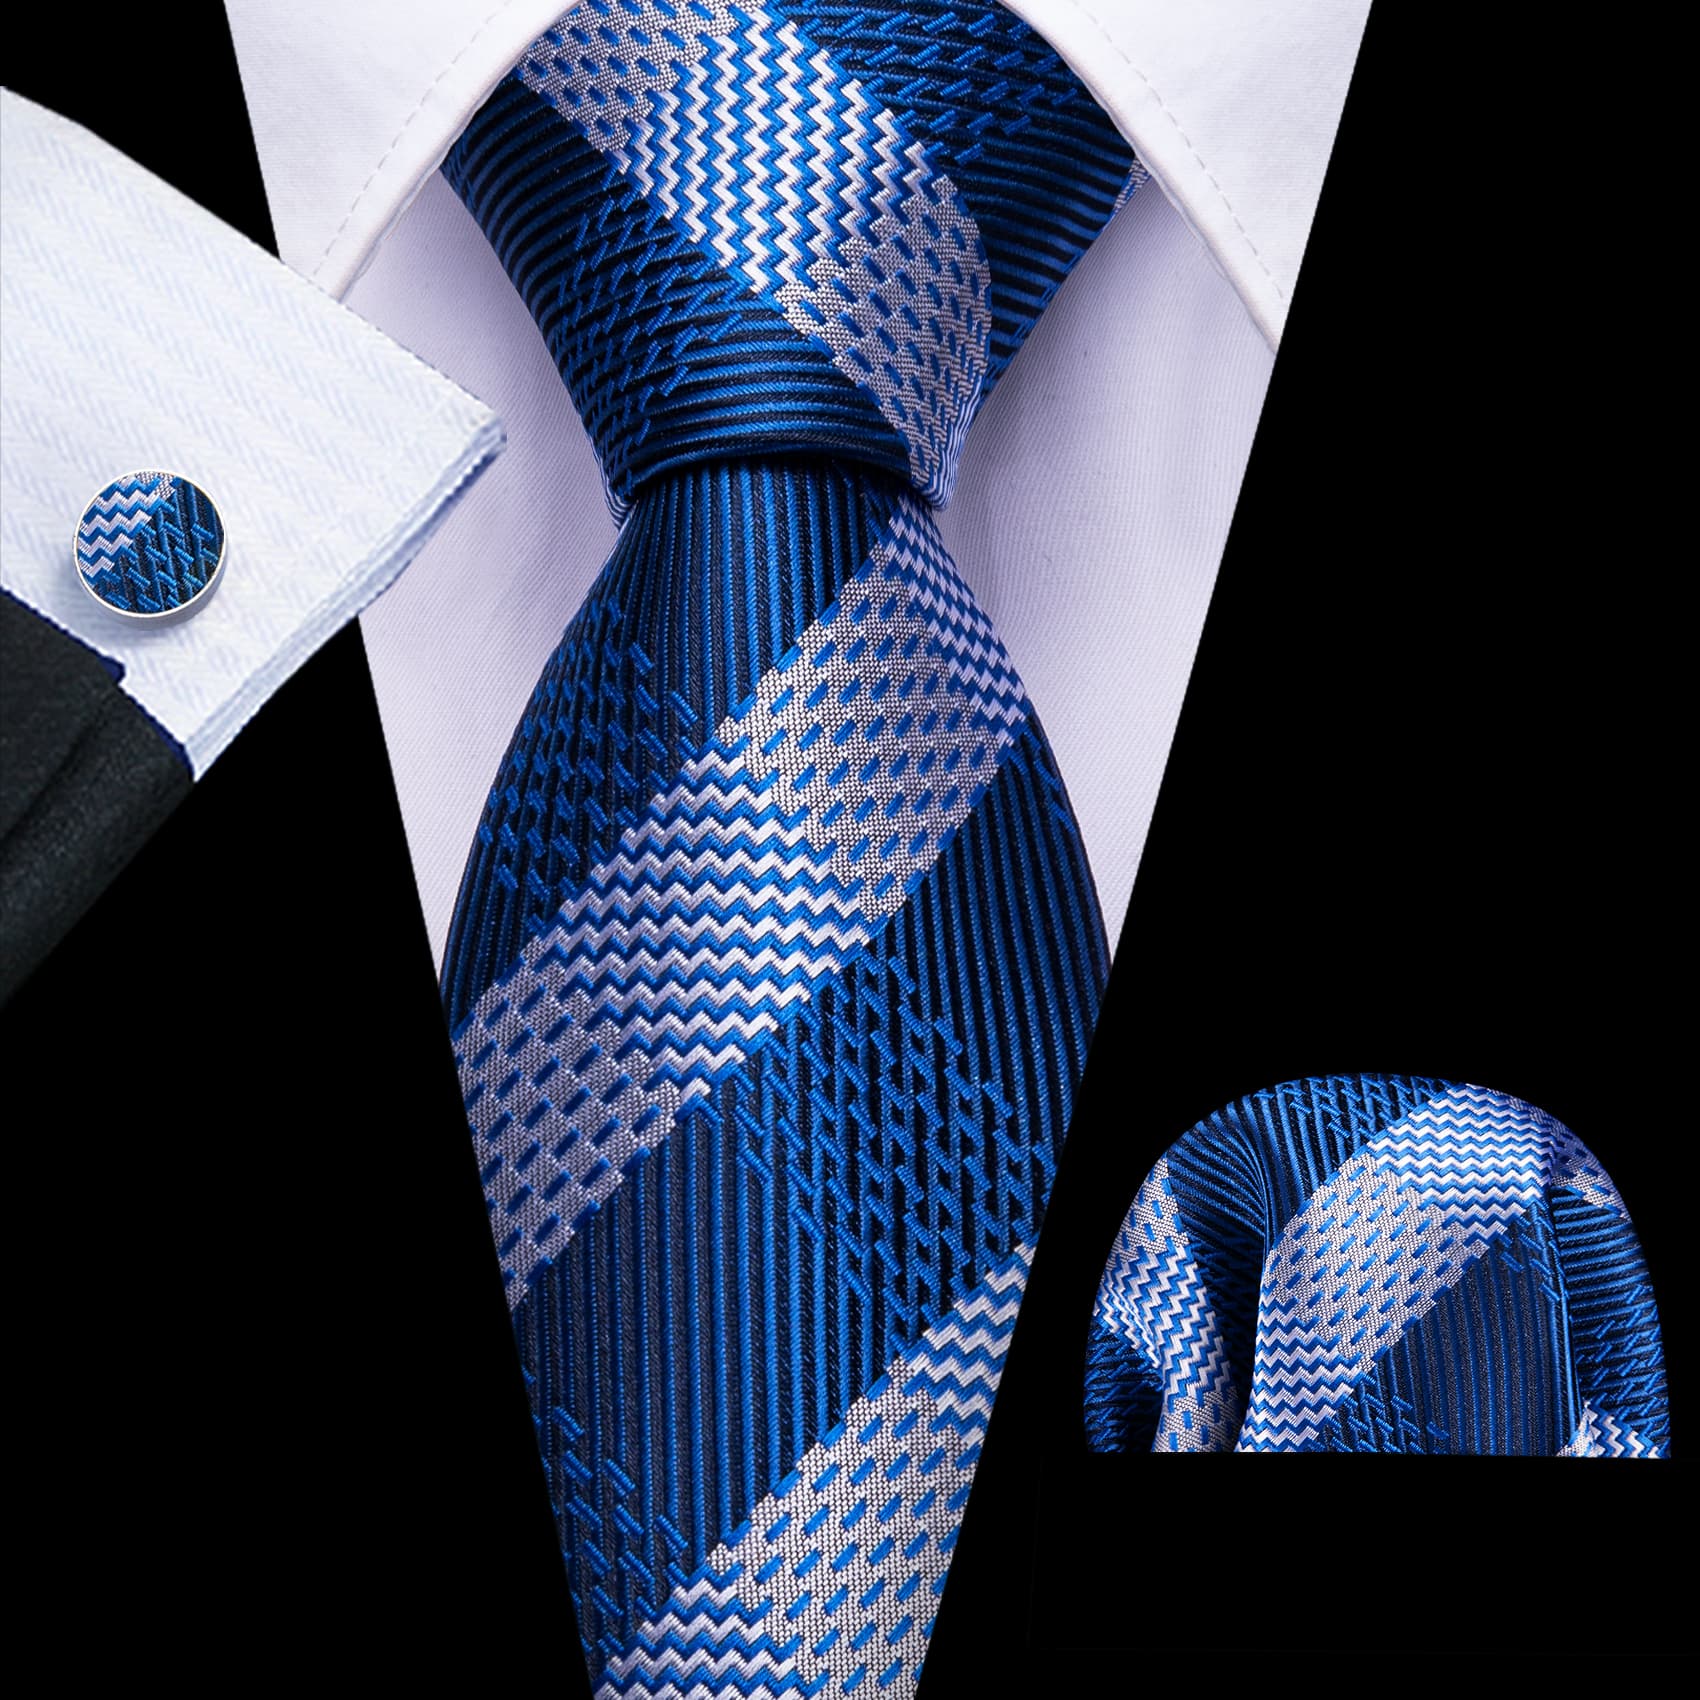 Mens Tie Striped Blue Grey Necktie Hanky Cufflinks Set